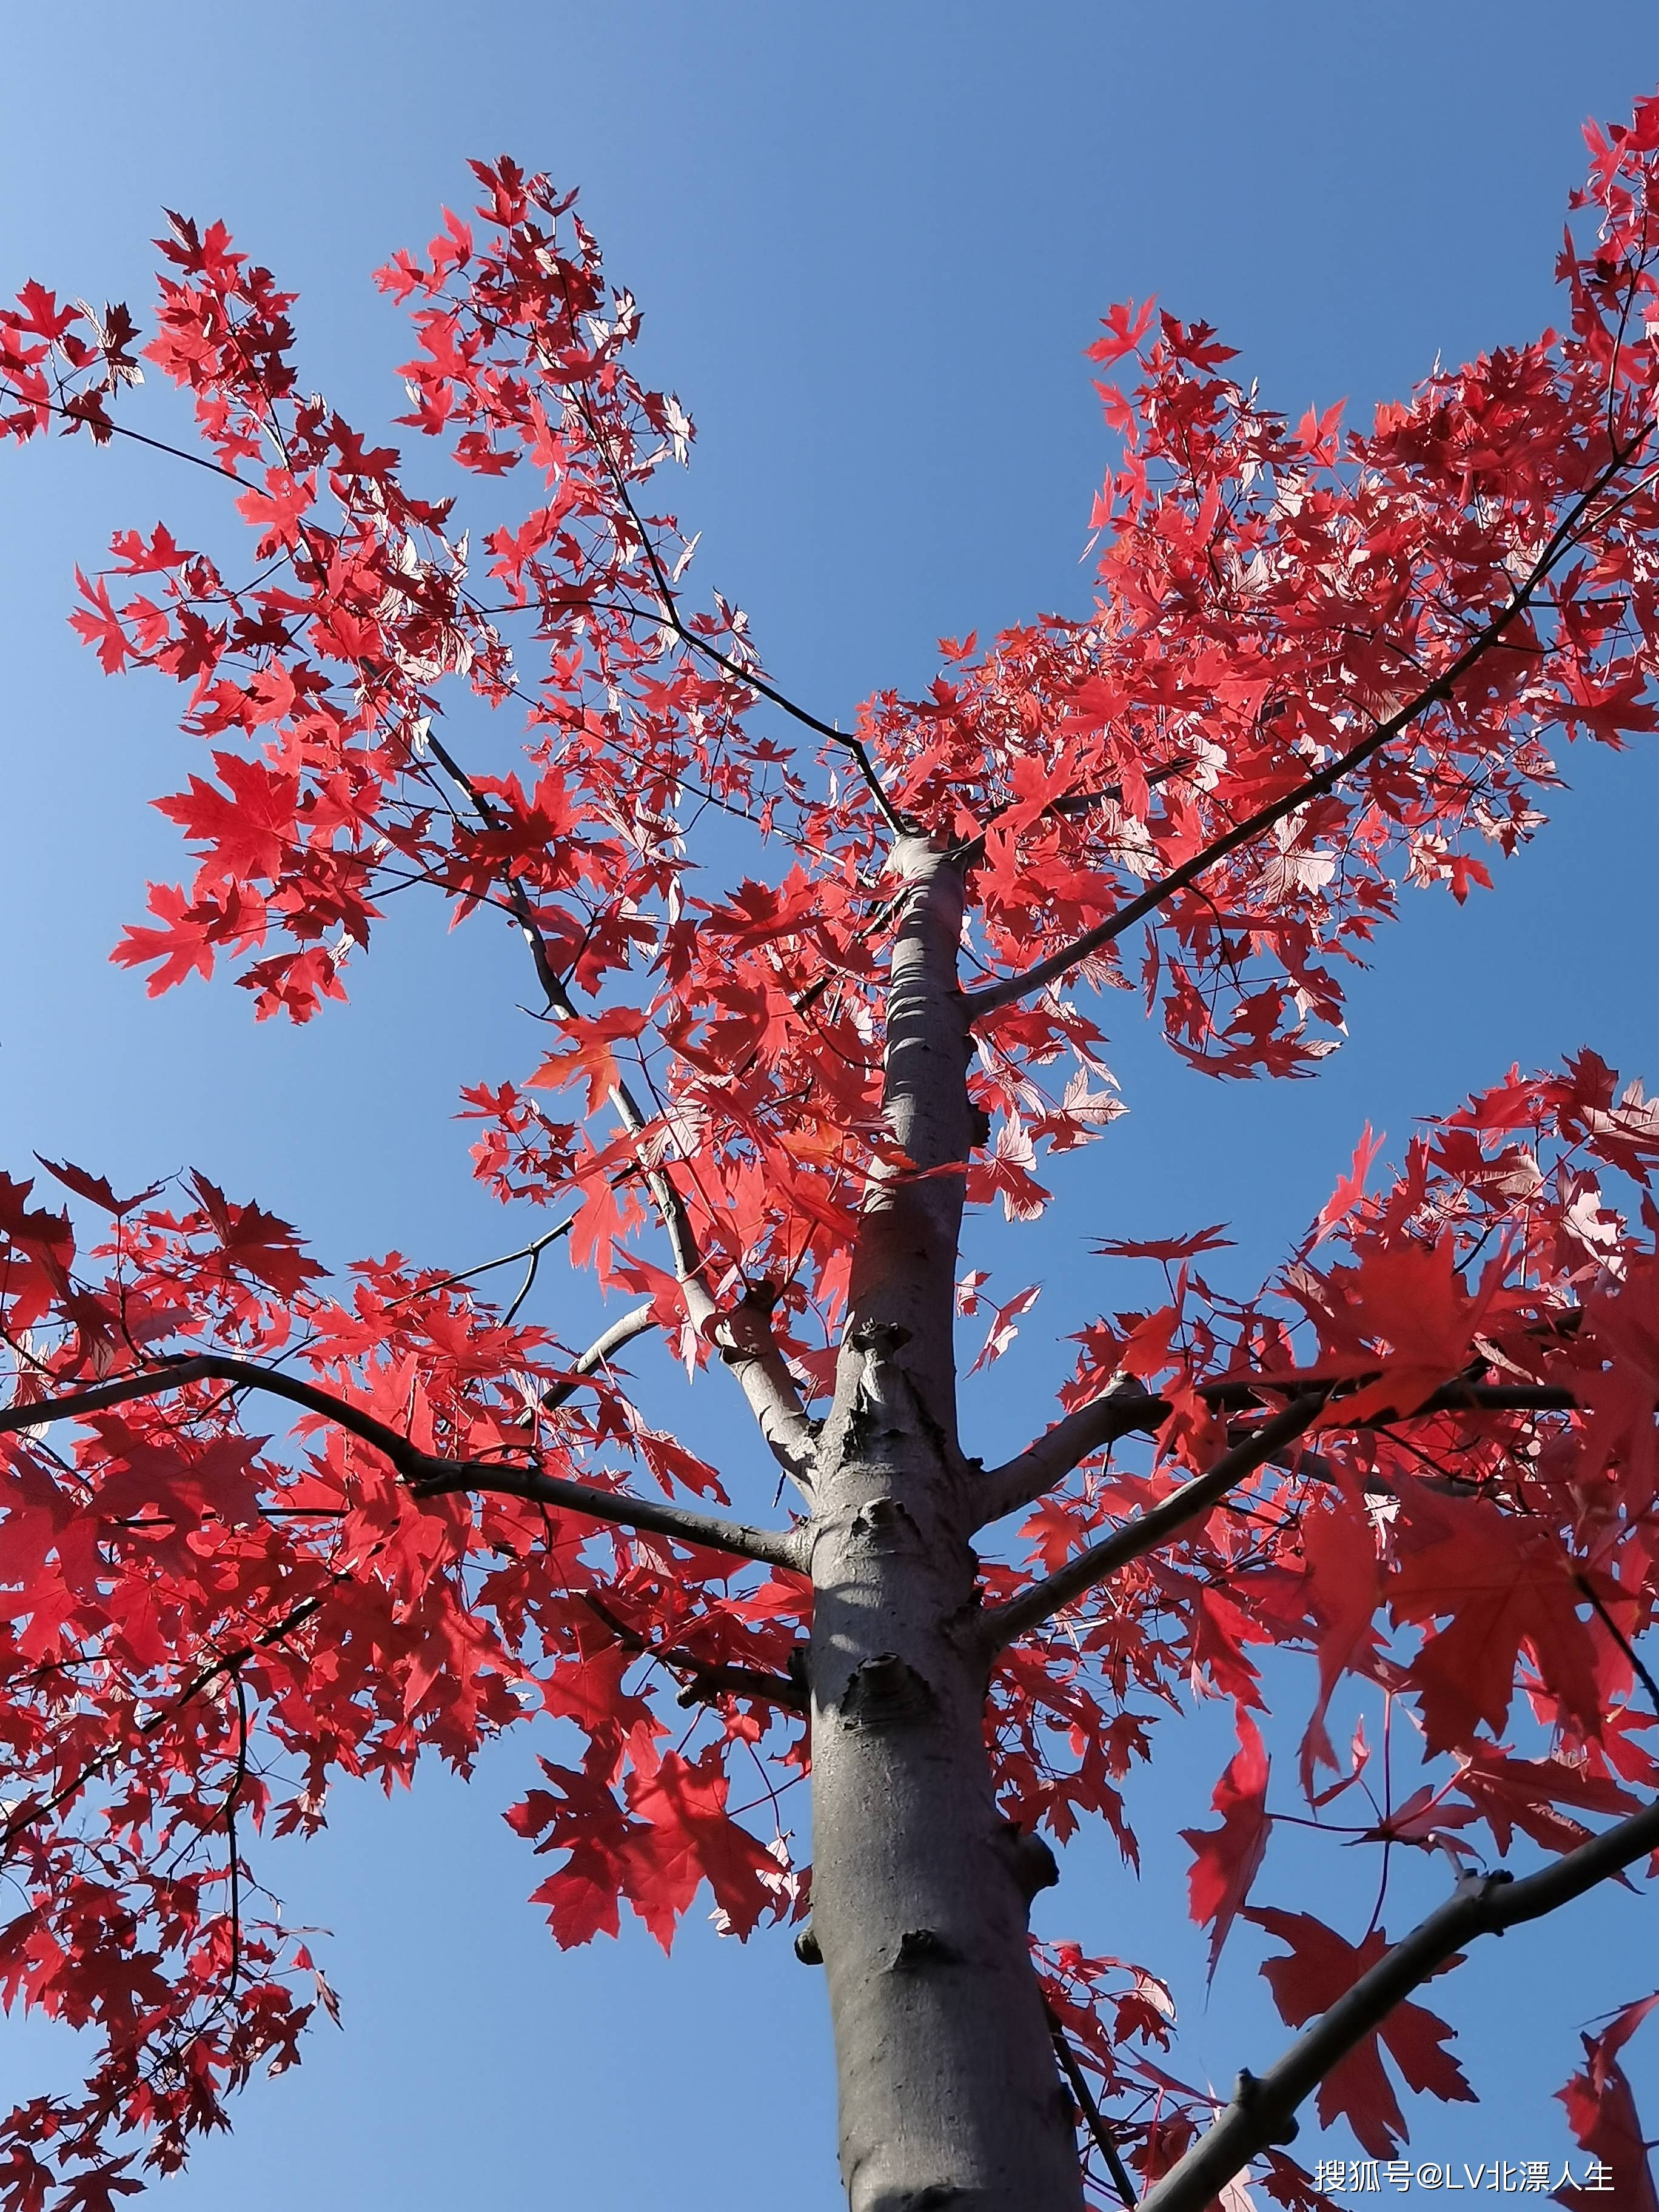 京城红叶记|秋风把枫叶染红，层林尽染，堪将秋韵赋诗笺